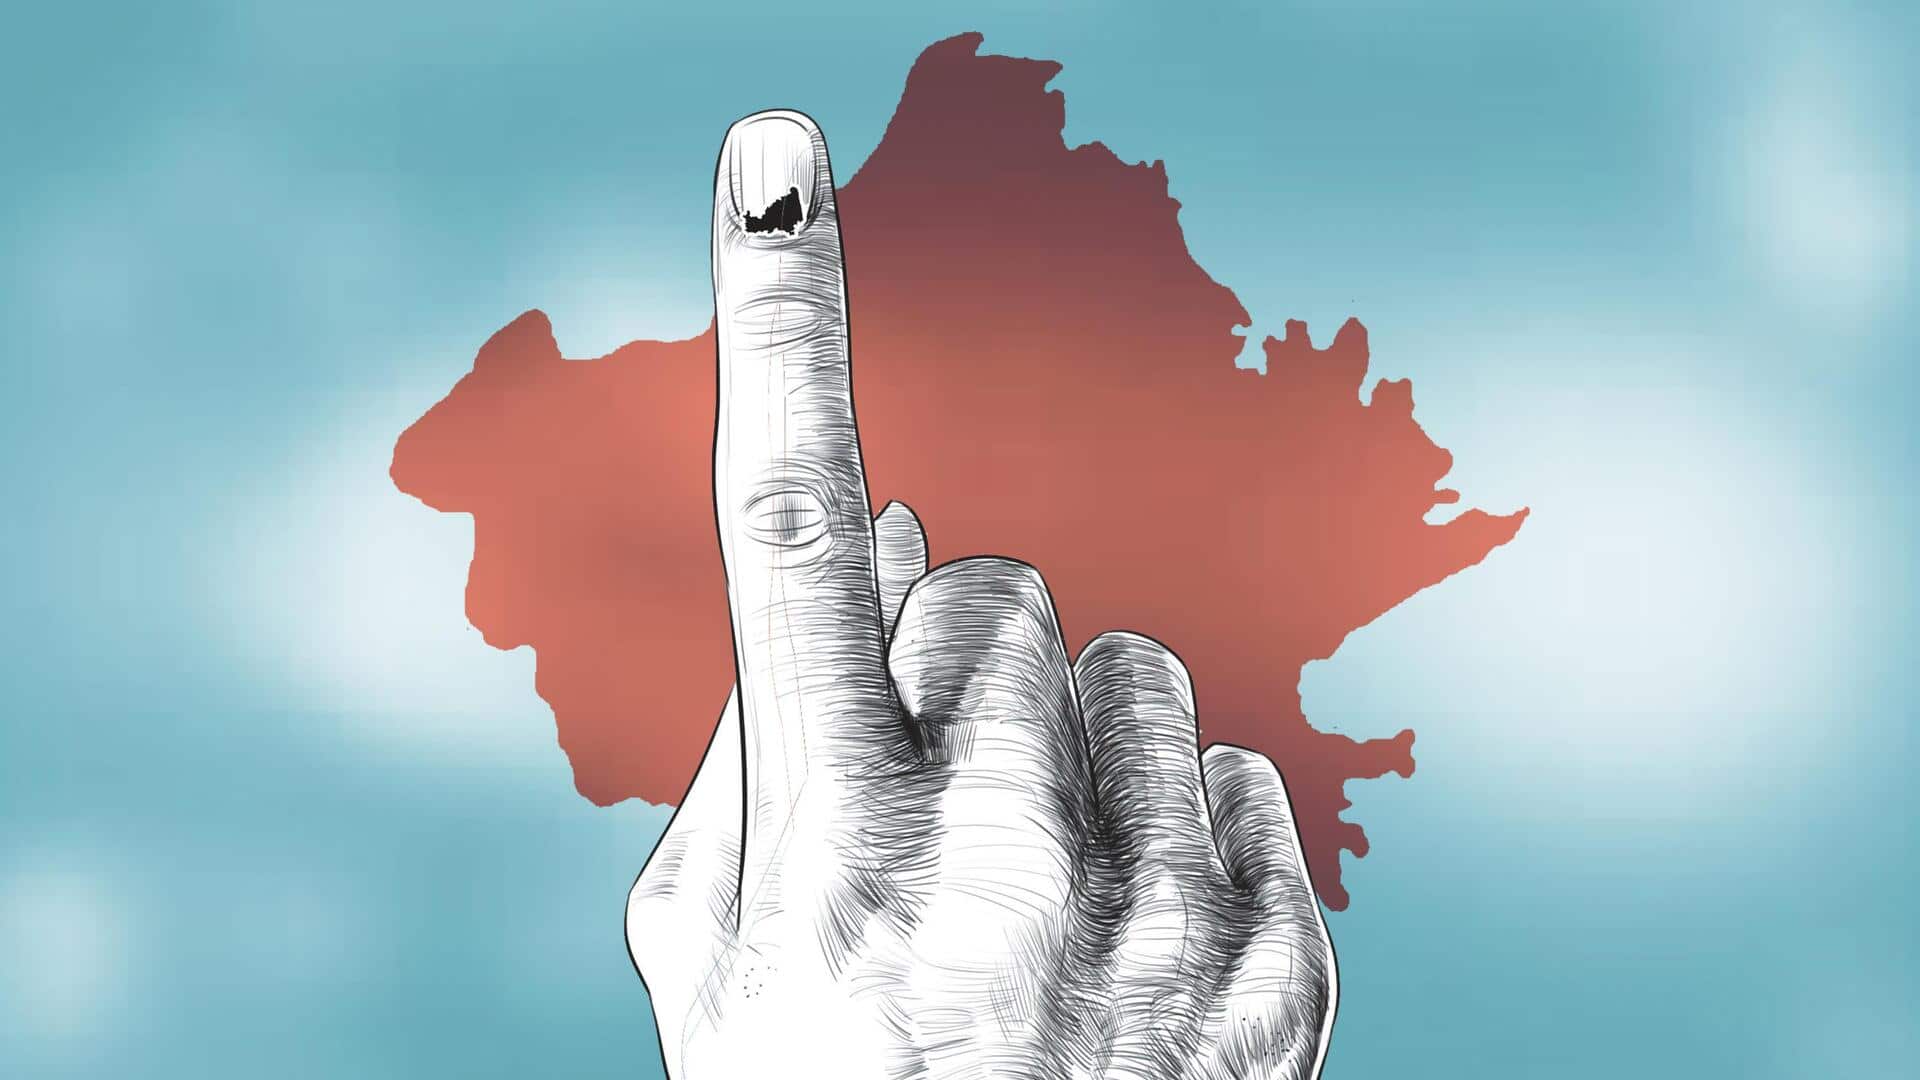 राजस्थान में विधानसभा चुनाव के लिए वोटिंग जारी, 3 बजे तक 55.63 प्रतिशत मतदान